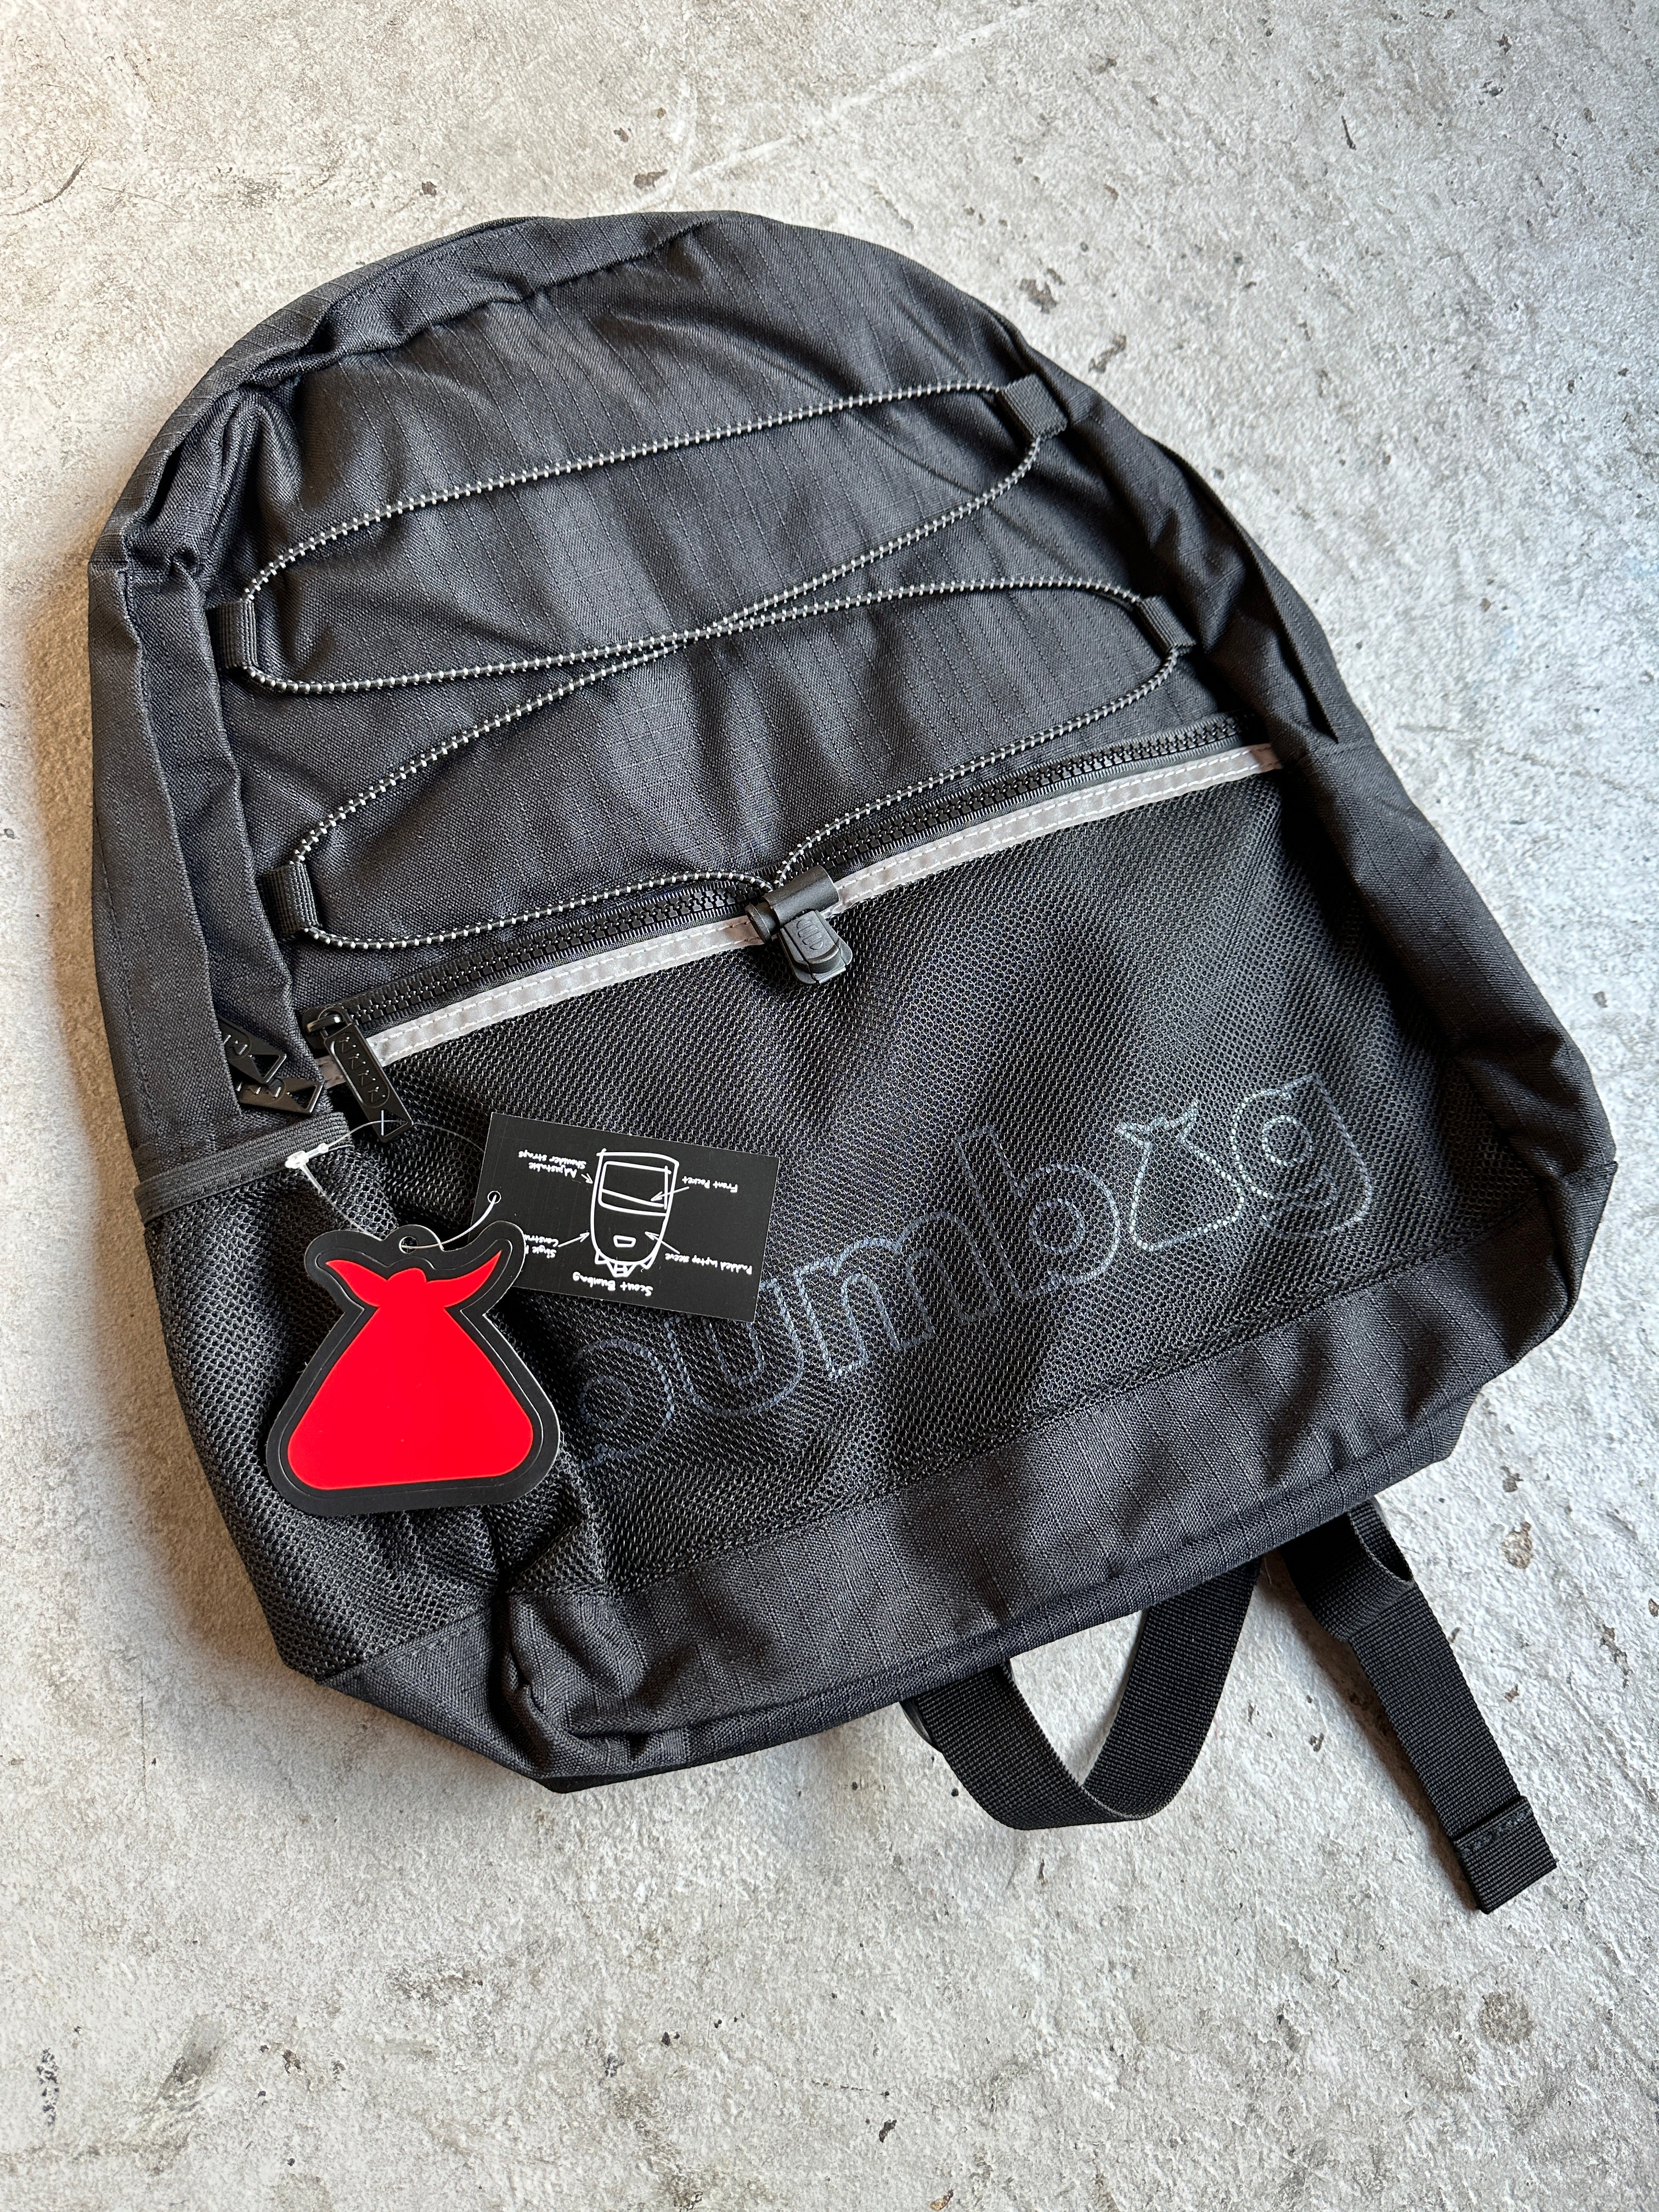 Heartstrings Duffle Bag by lisa weedn | Society6